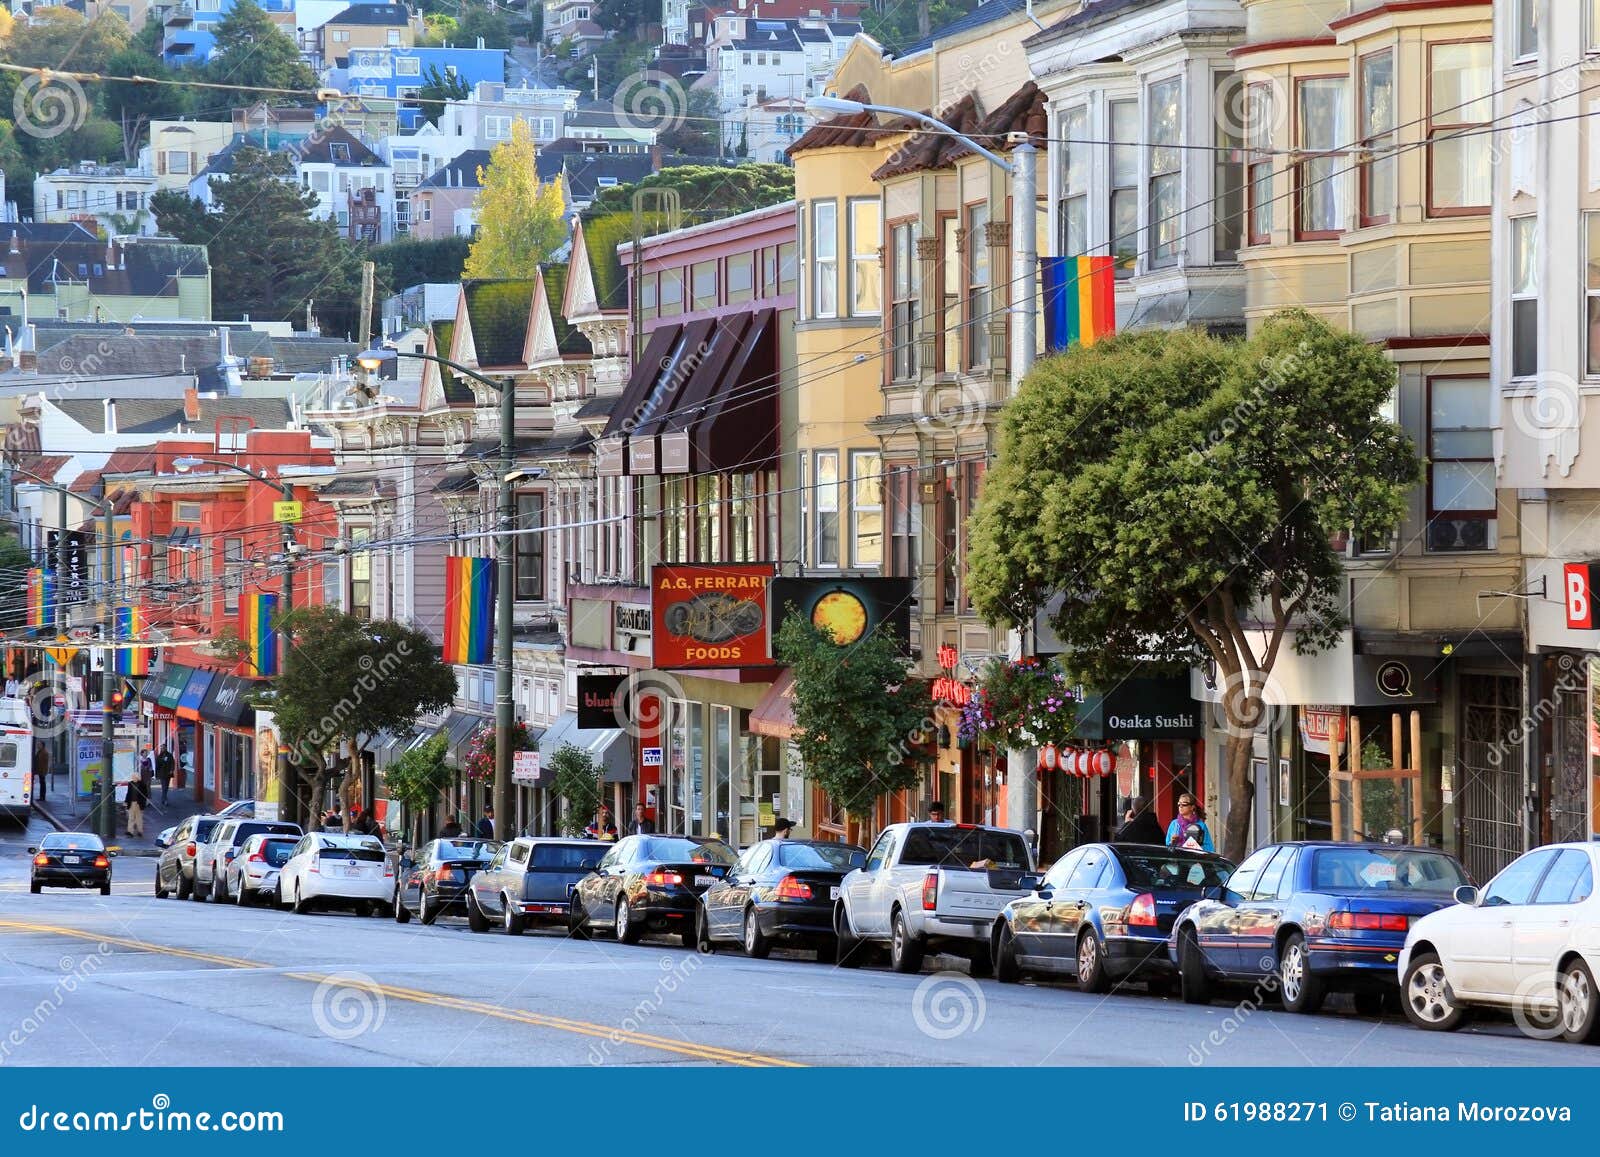 حي المثليين في سان فرانسيسكو كاليفورنيا